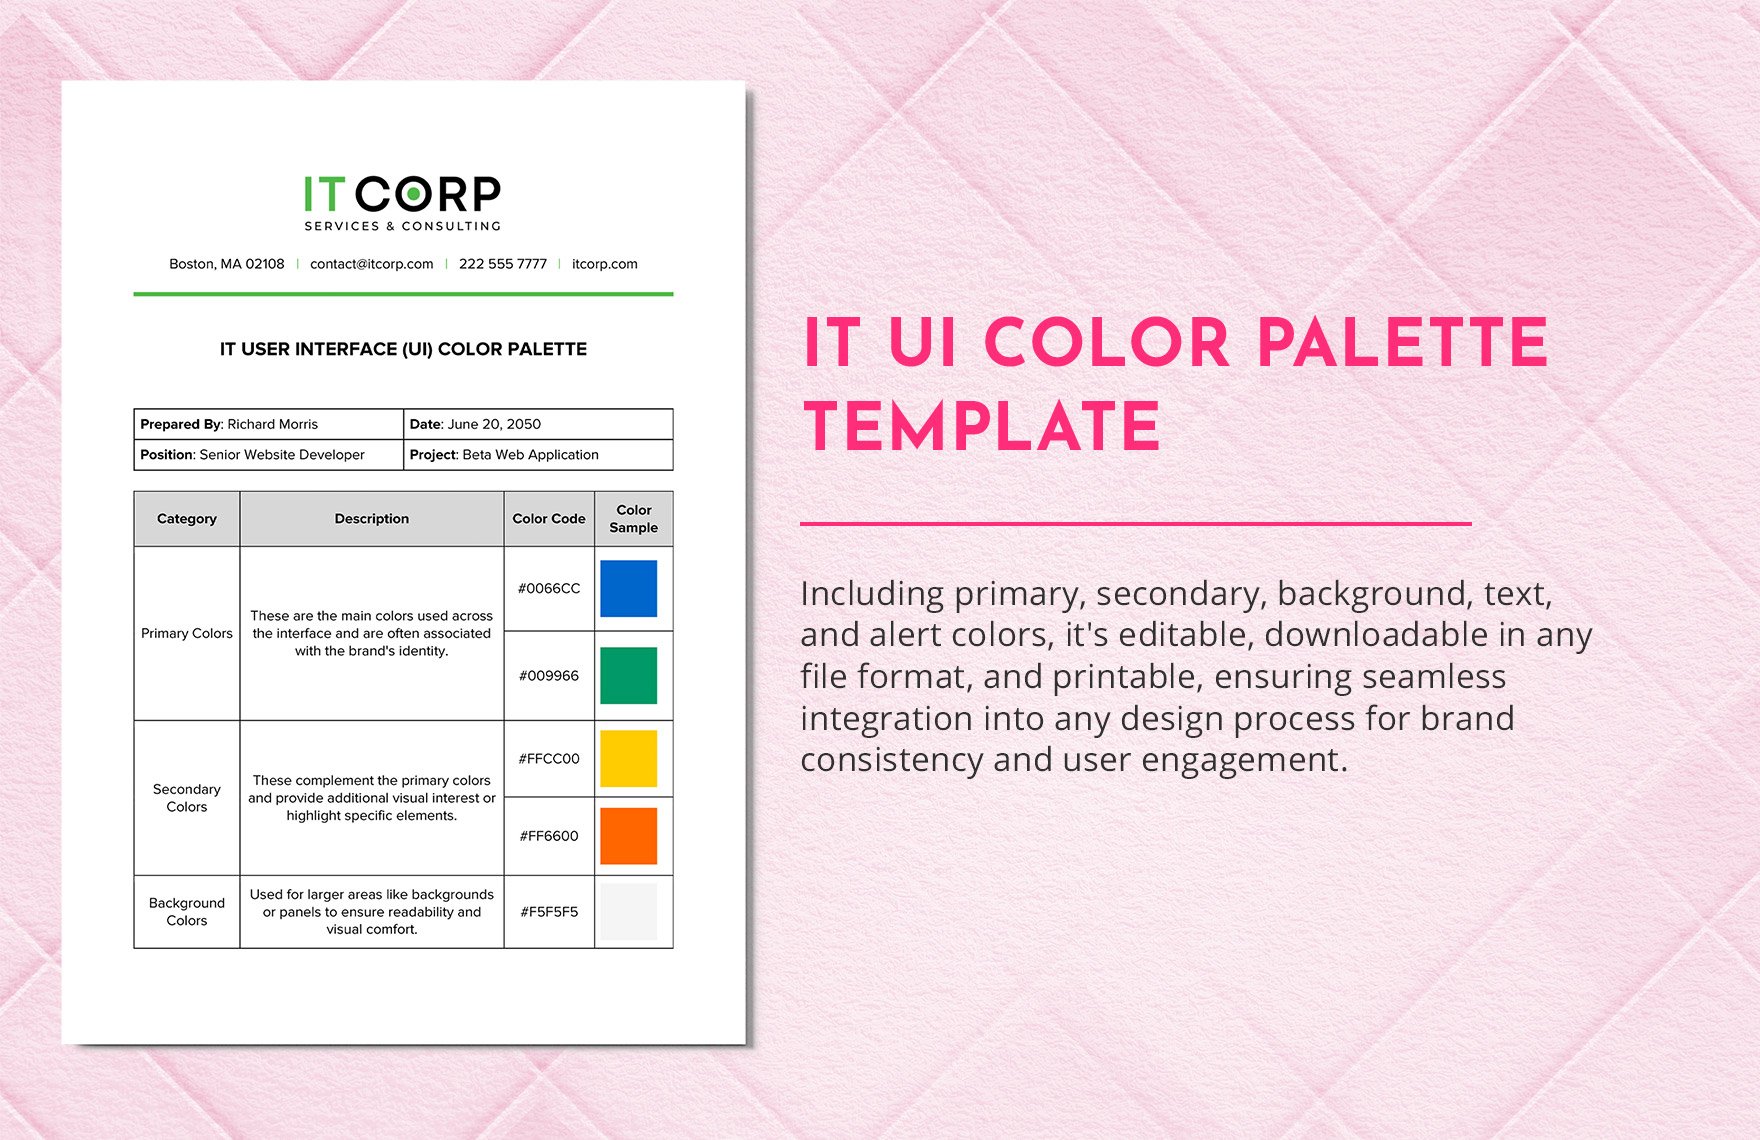 IT UI Color Palette Template